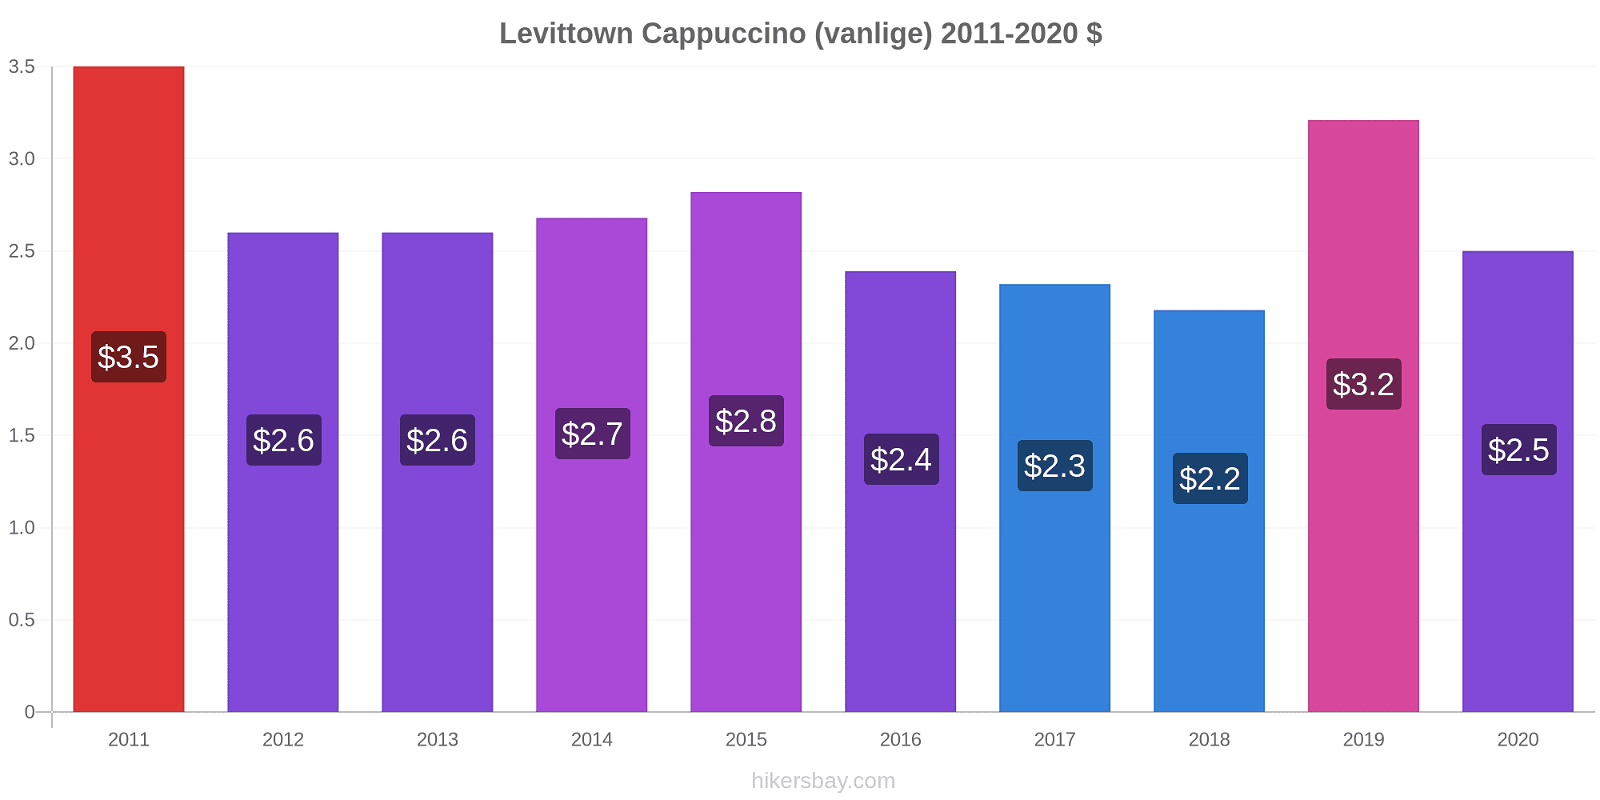 Levittown prisendringer Cappuccino (vanlige) hikersbay.com